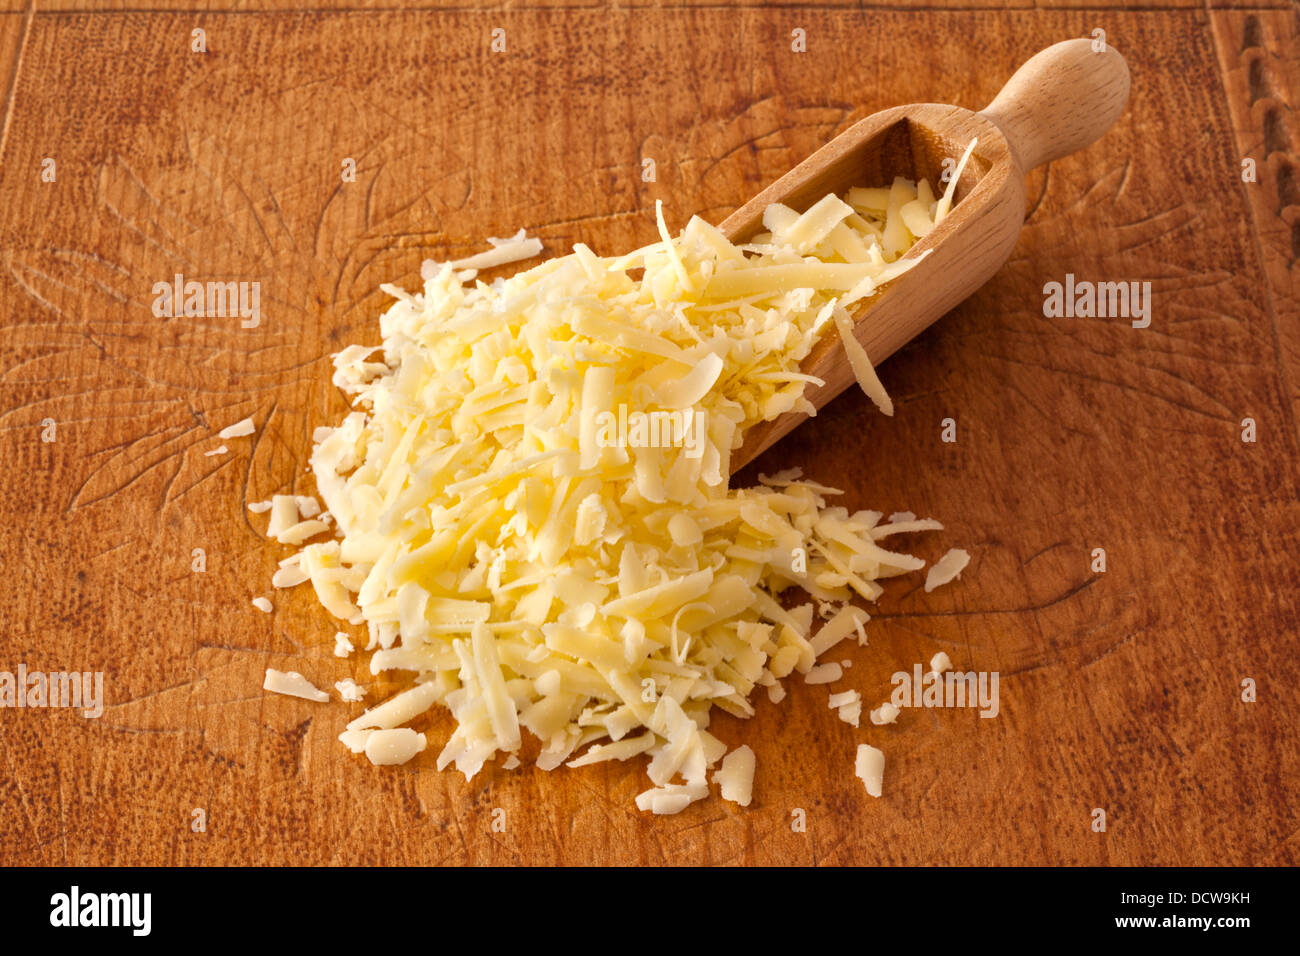 Geriebenem Käse - eine Kugel geriebenen Cheddar-Käse auf einem alten Holzbrett. Stockfoto